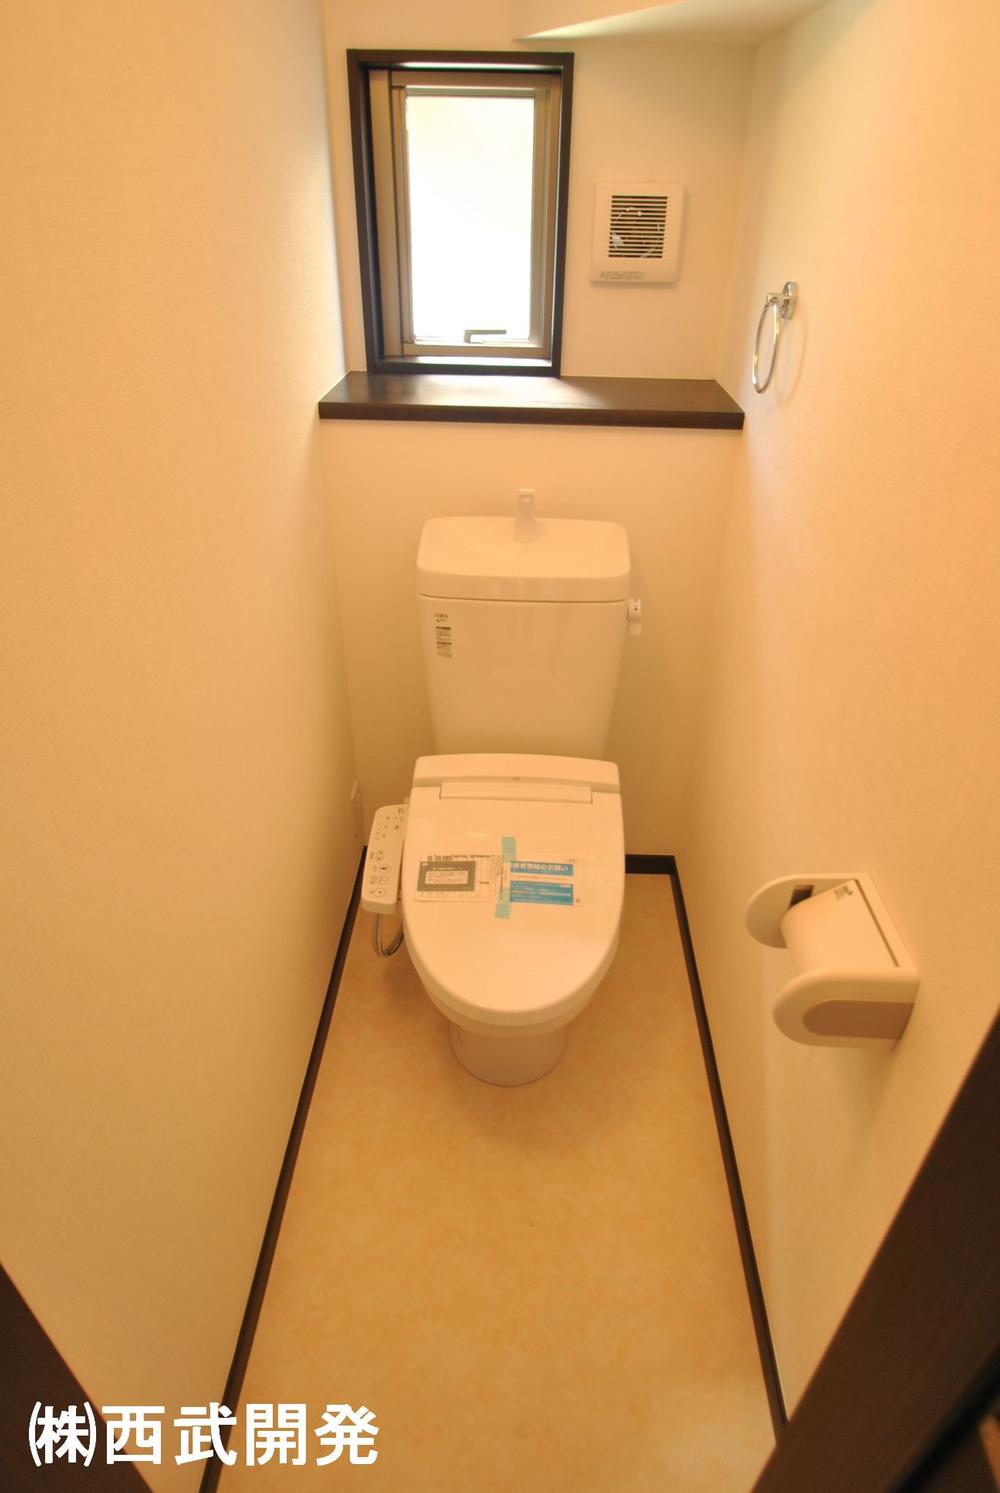 Toilet. Indoor (10 May 2013) Shooting 1st floor